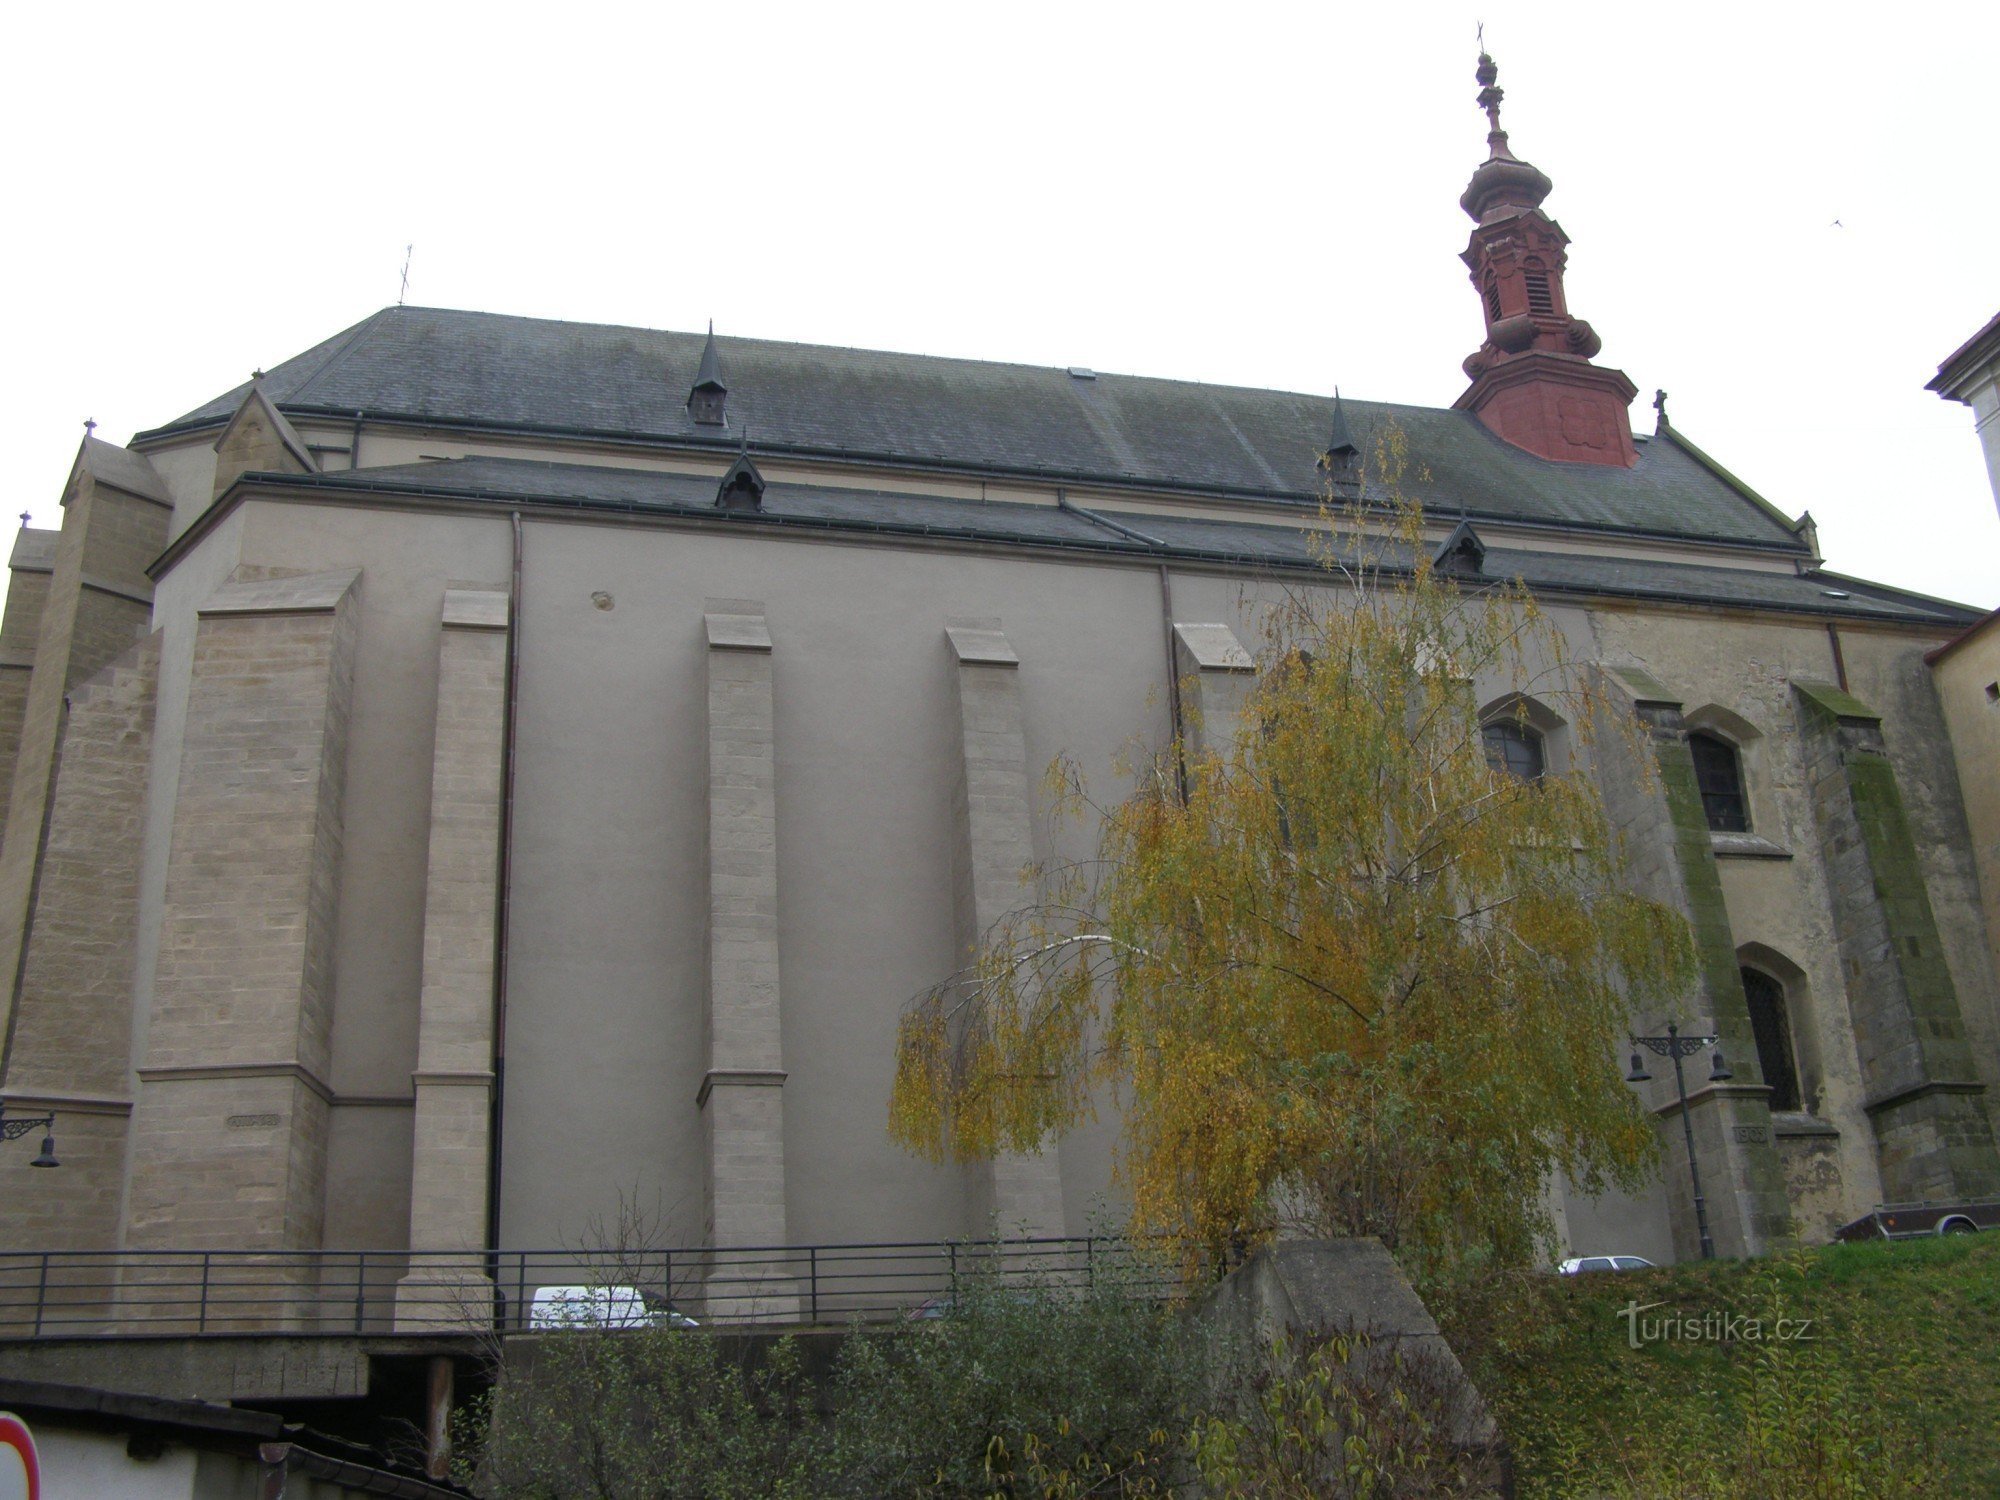 Jaroměř - iglesia de St. Nicolás